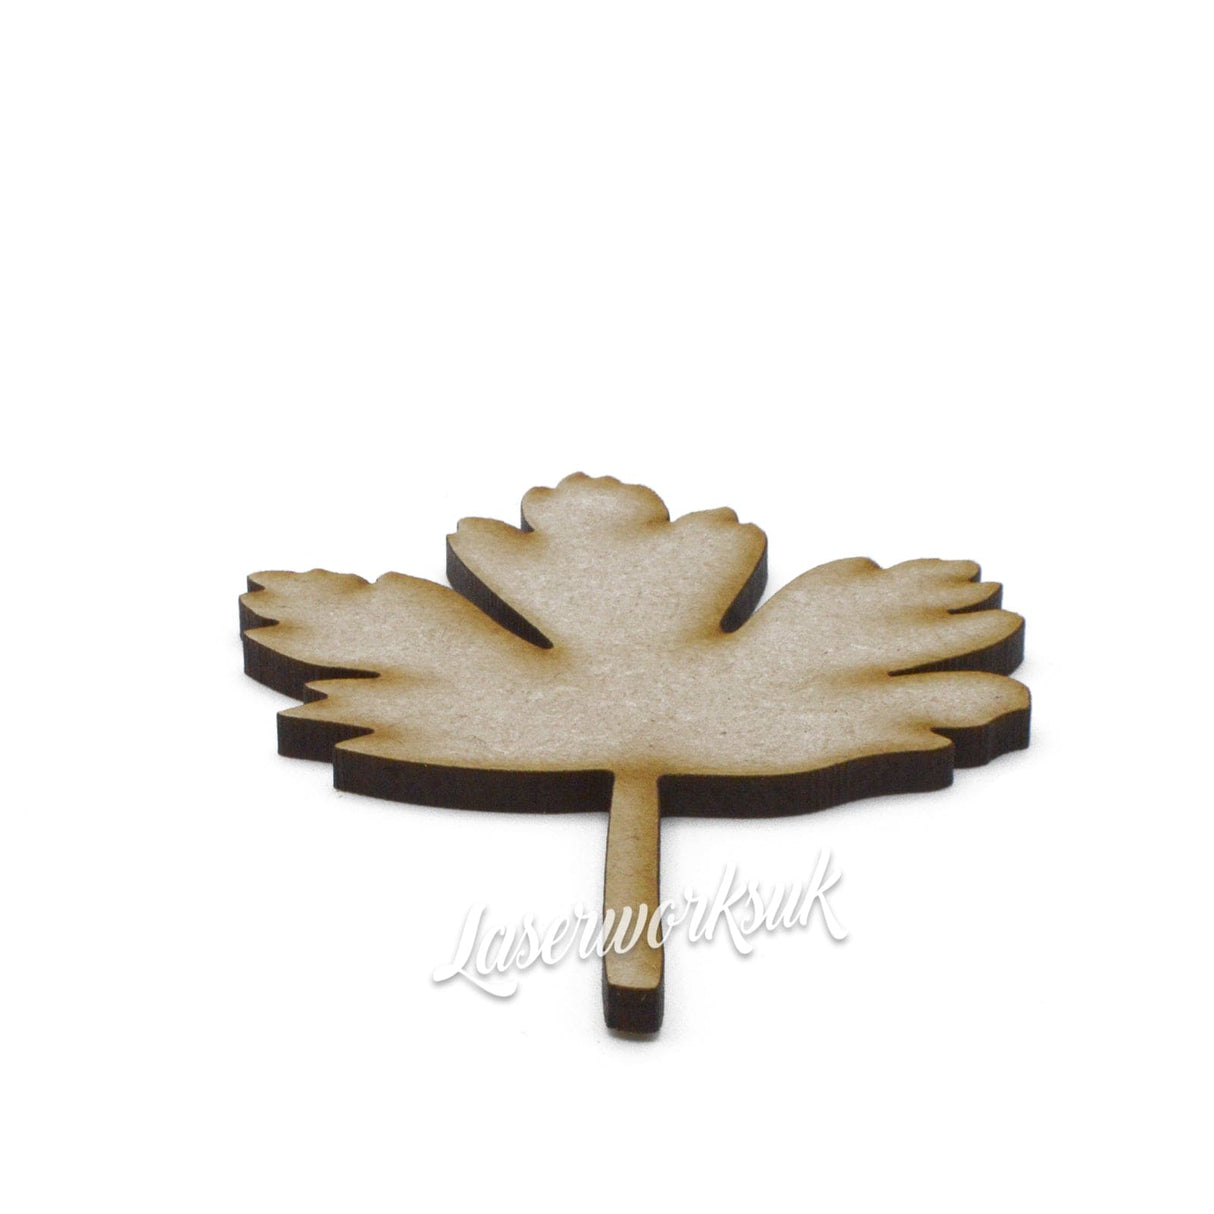 Gooseberry Leaf Shapes - MDF Craft Shapes - Laserworksuk